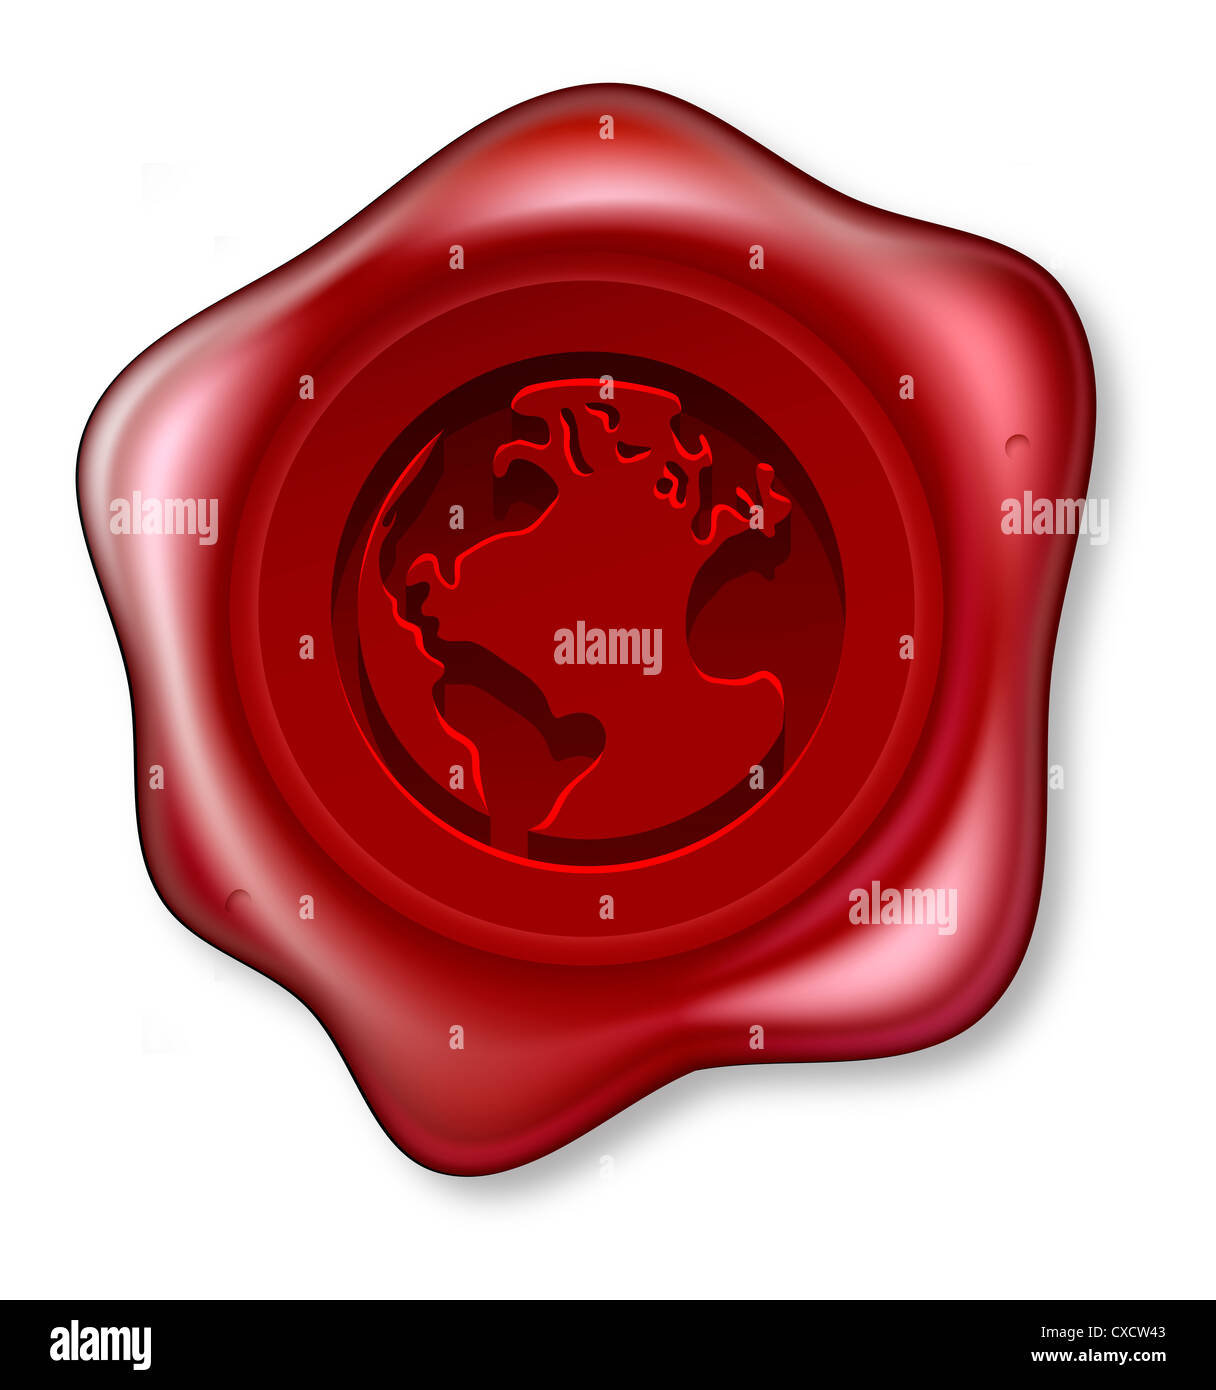 Ein rotes Siegelwachs Siegel mit einem Welt-Globus-Motiv auf ihr eingeprägten Stockfoto